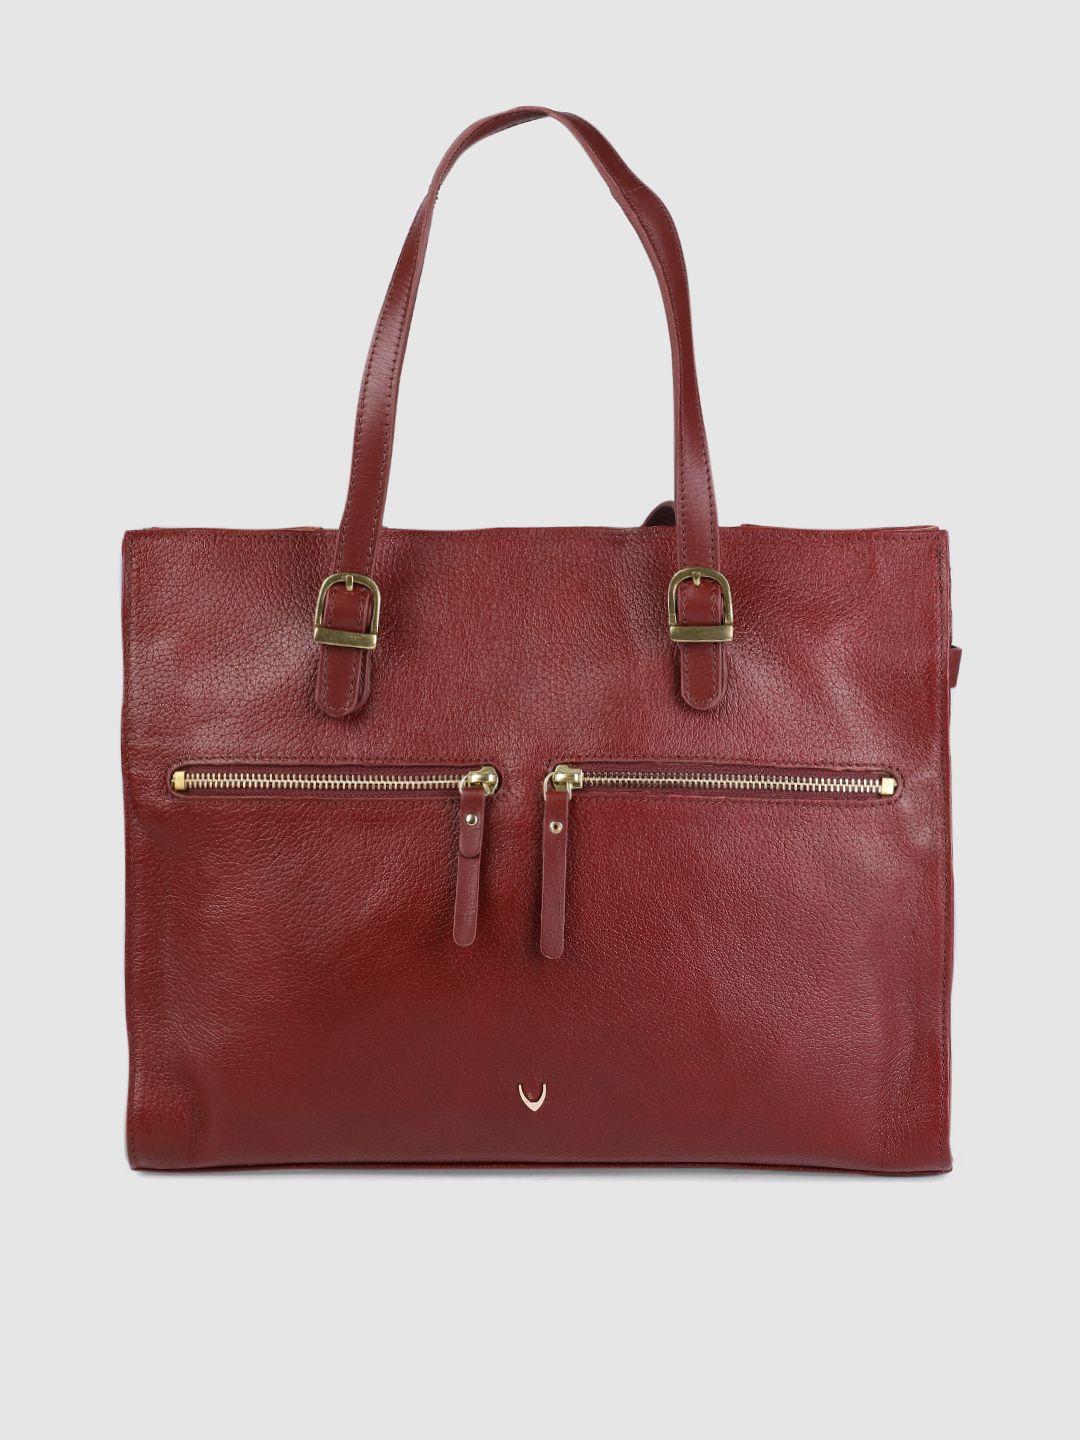 hidesign red solid shoulder leather bag